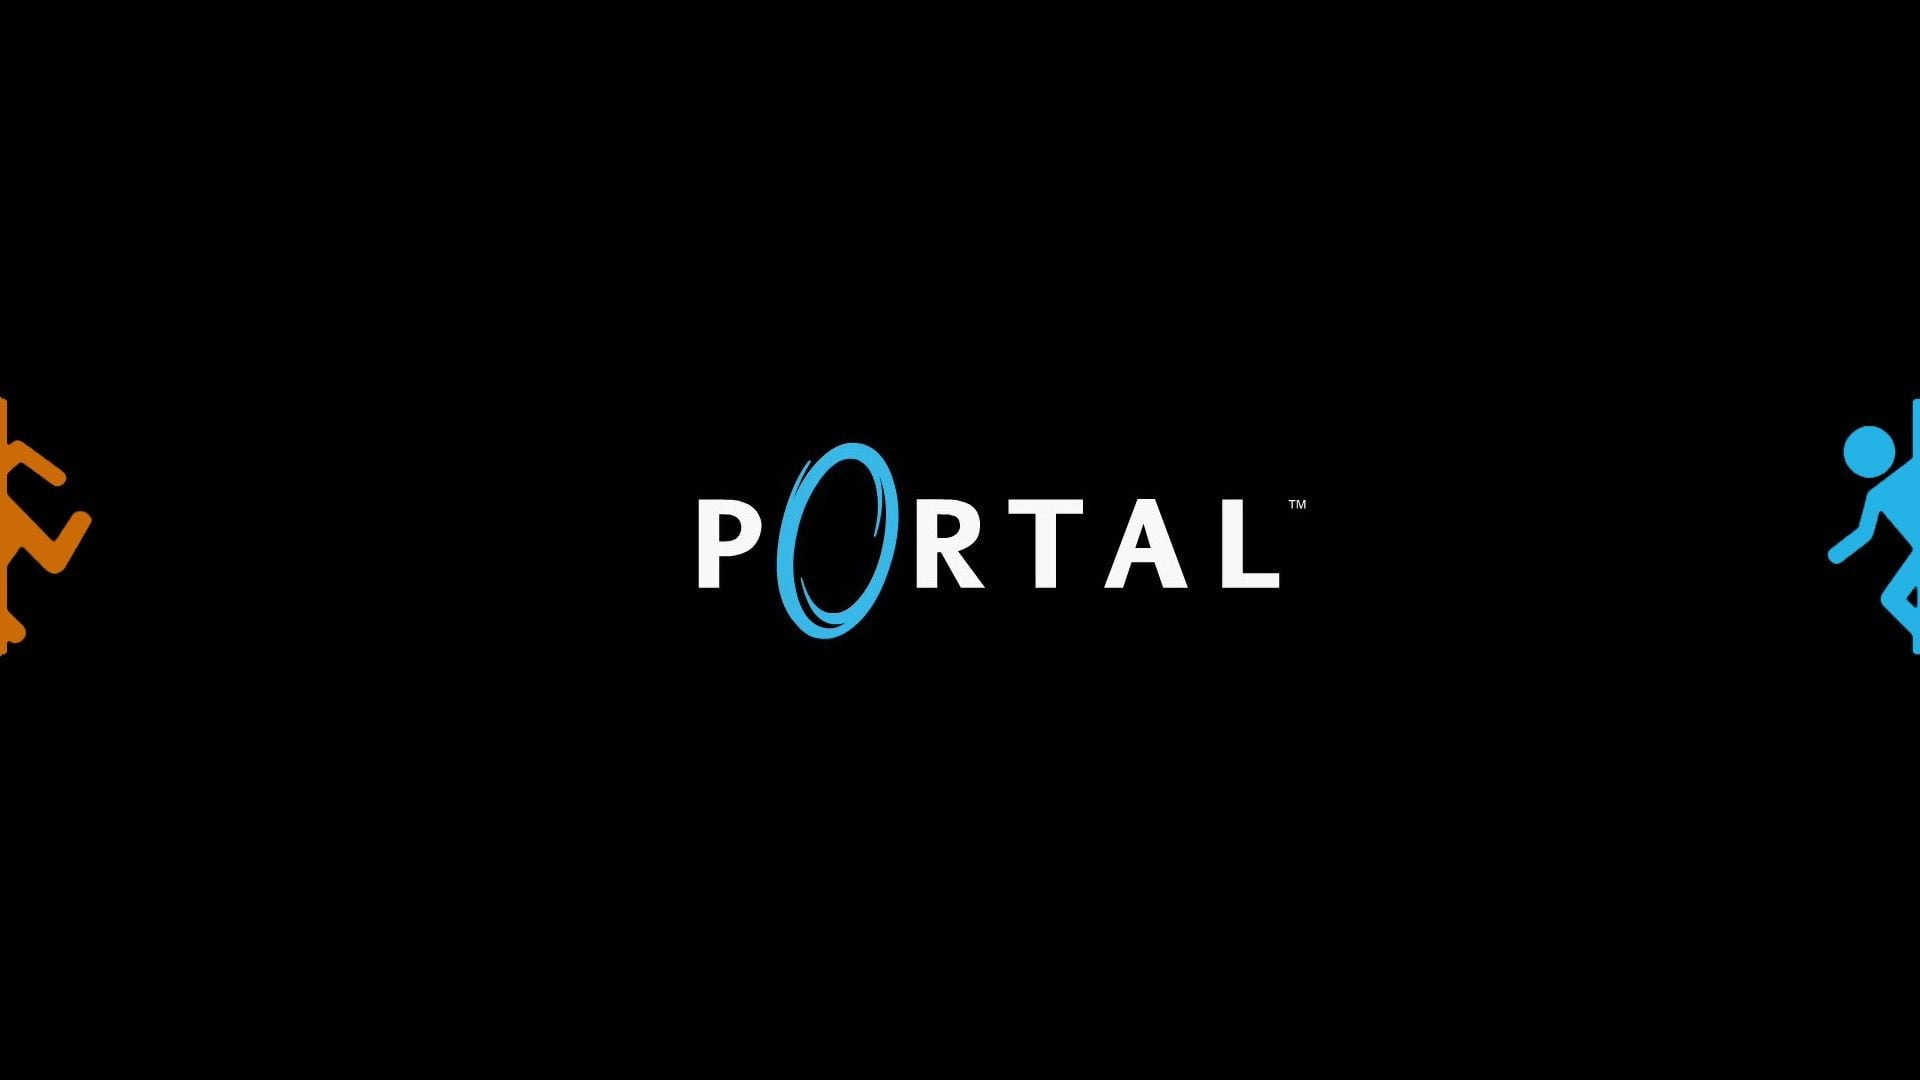 Portal 2 for mac os фото 117